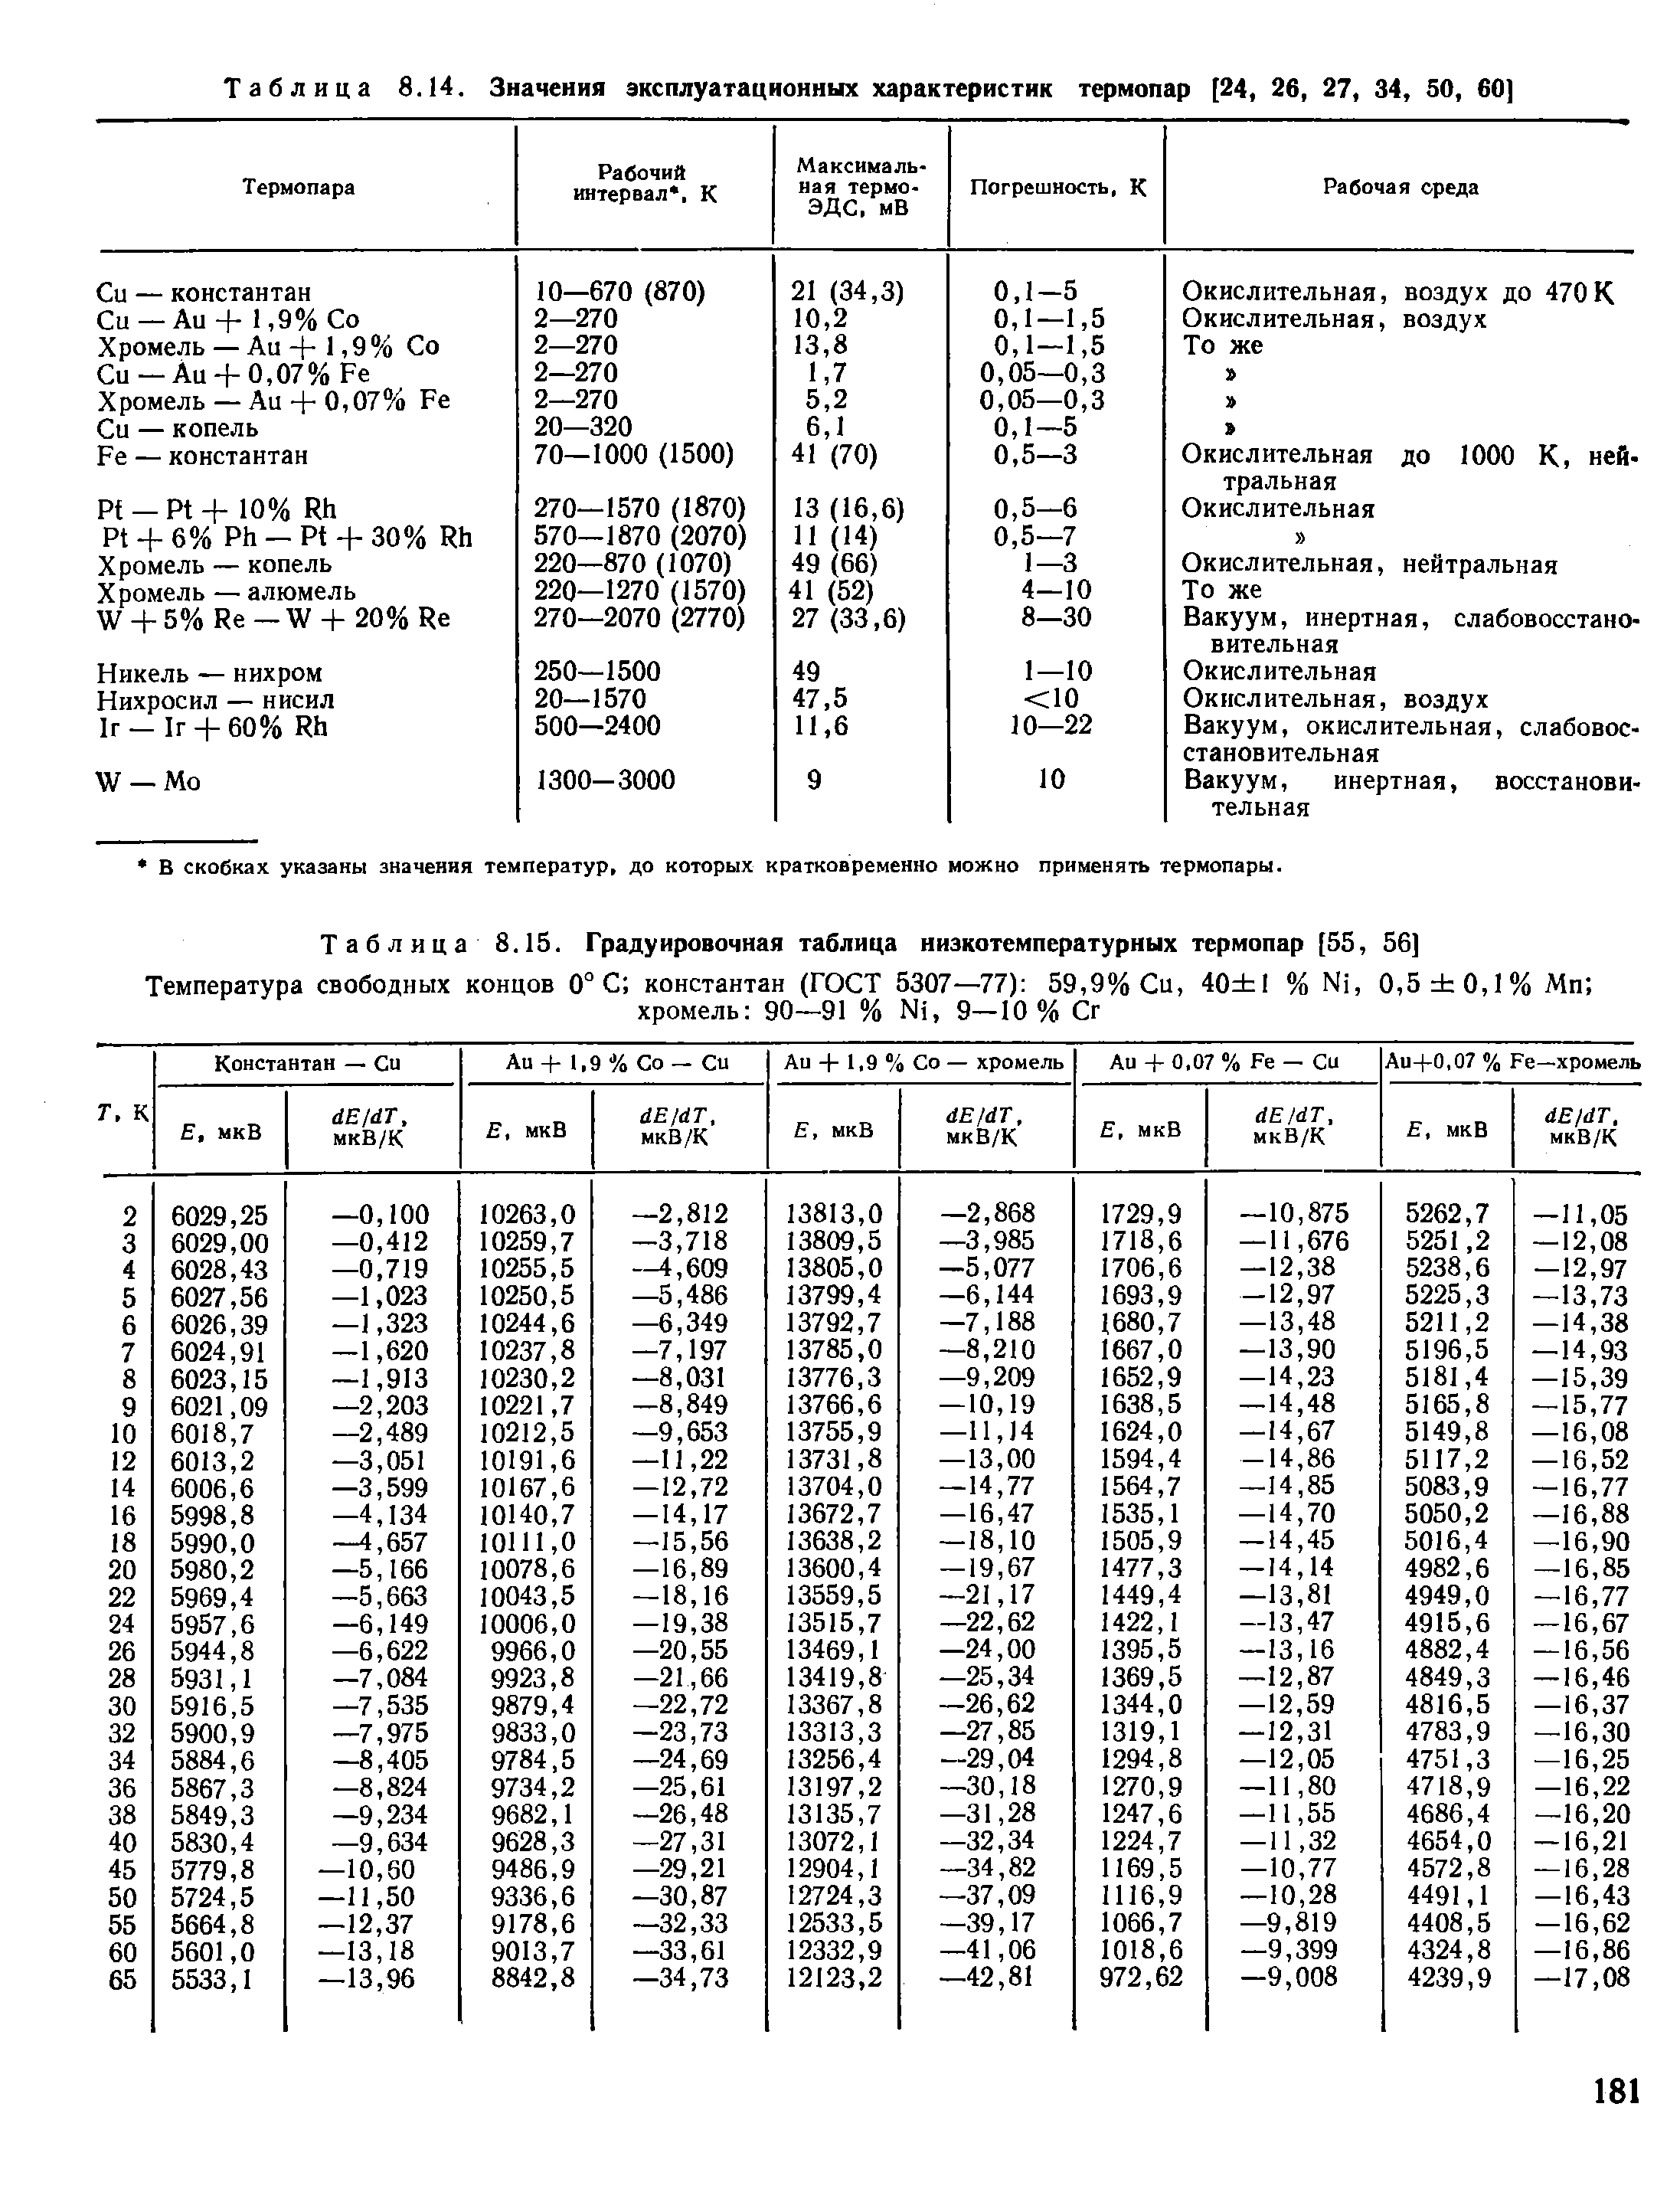 Таблица 8.15. Градуировочная таблица низкотемпературных термопар [55, 56]
